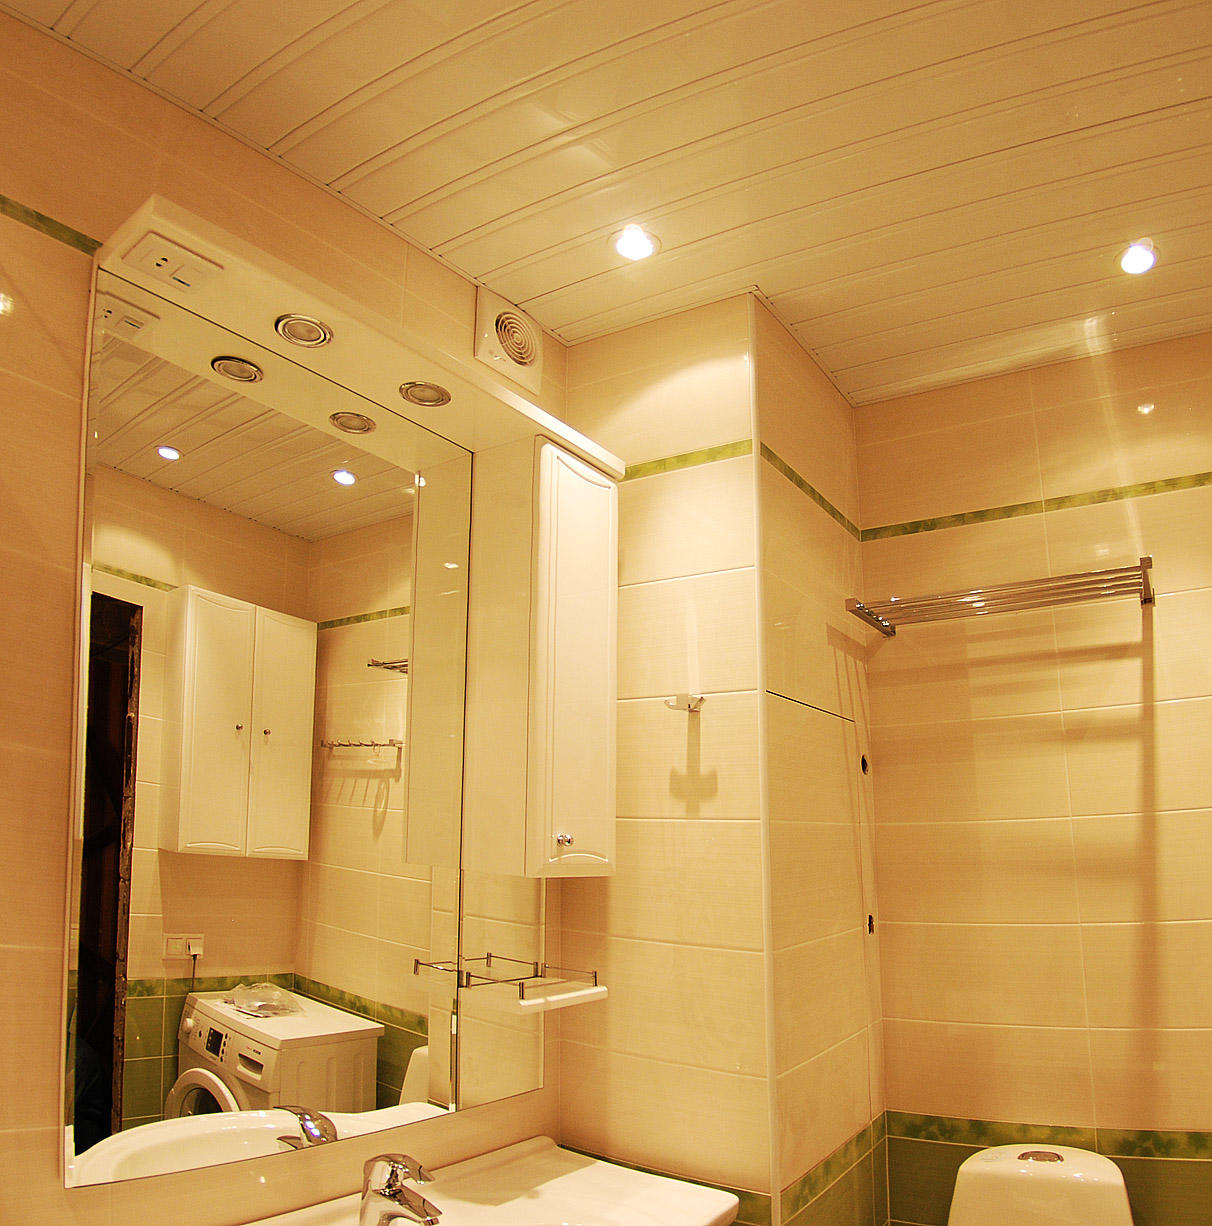 Реечный потолок позволяет эффектно оформить потолок в ванной без значительной потери высоты